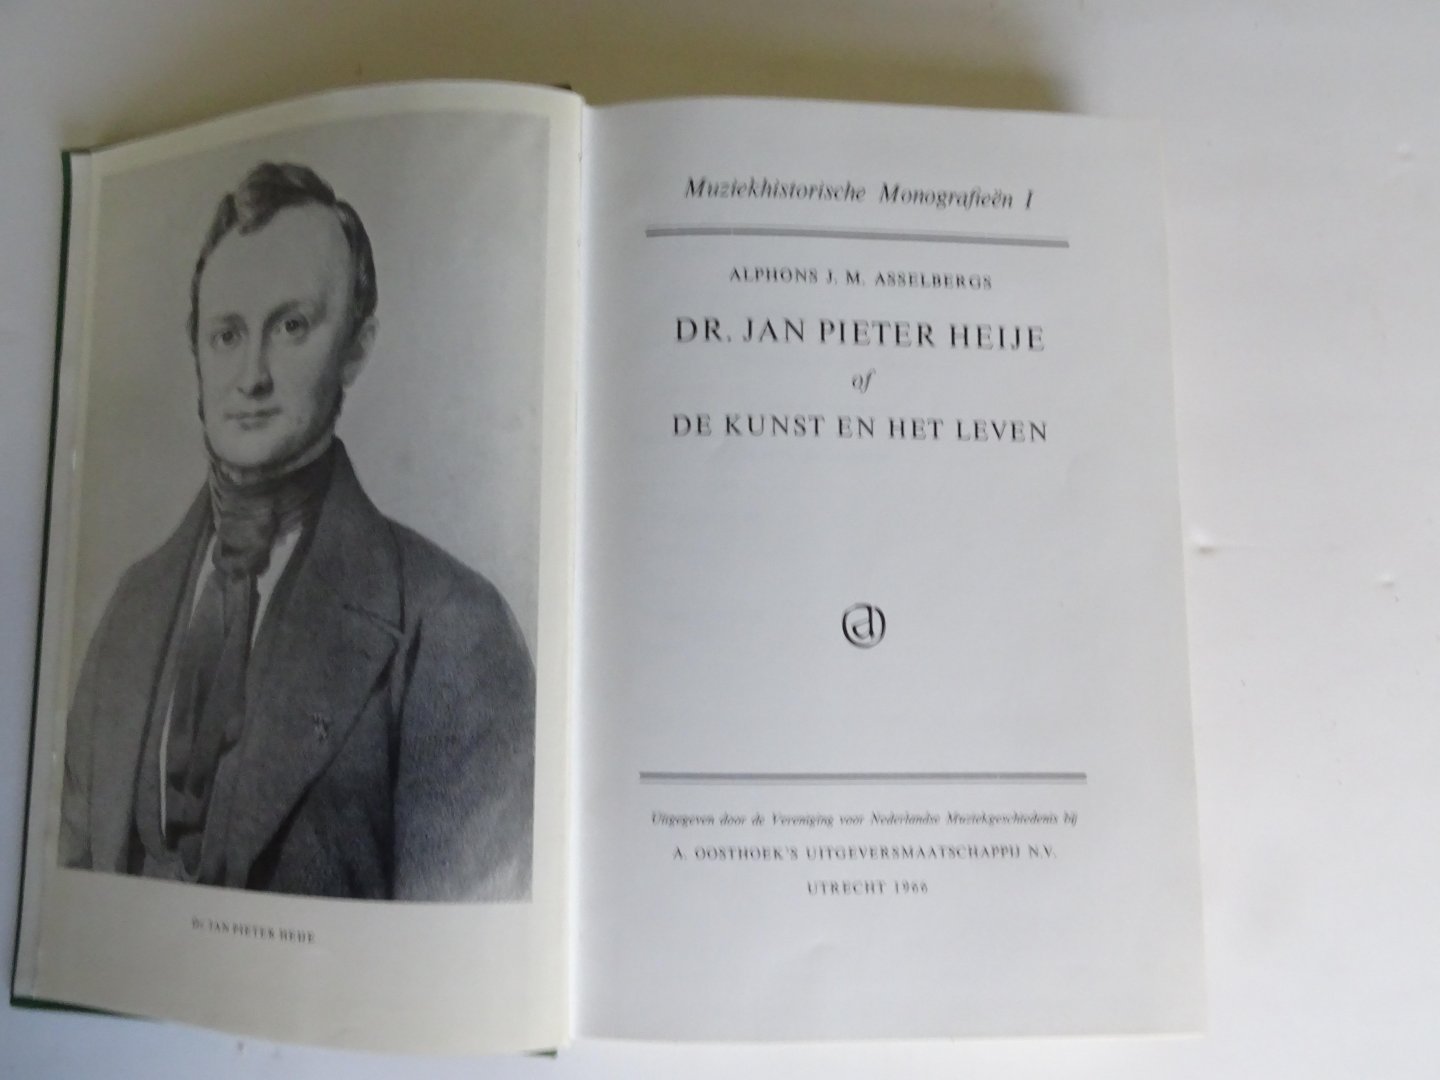 Asselbergs, Alphons J.M. - Dr. Jan Pieter Heije of De kunst van het leven.